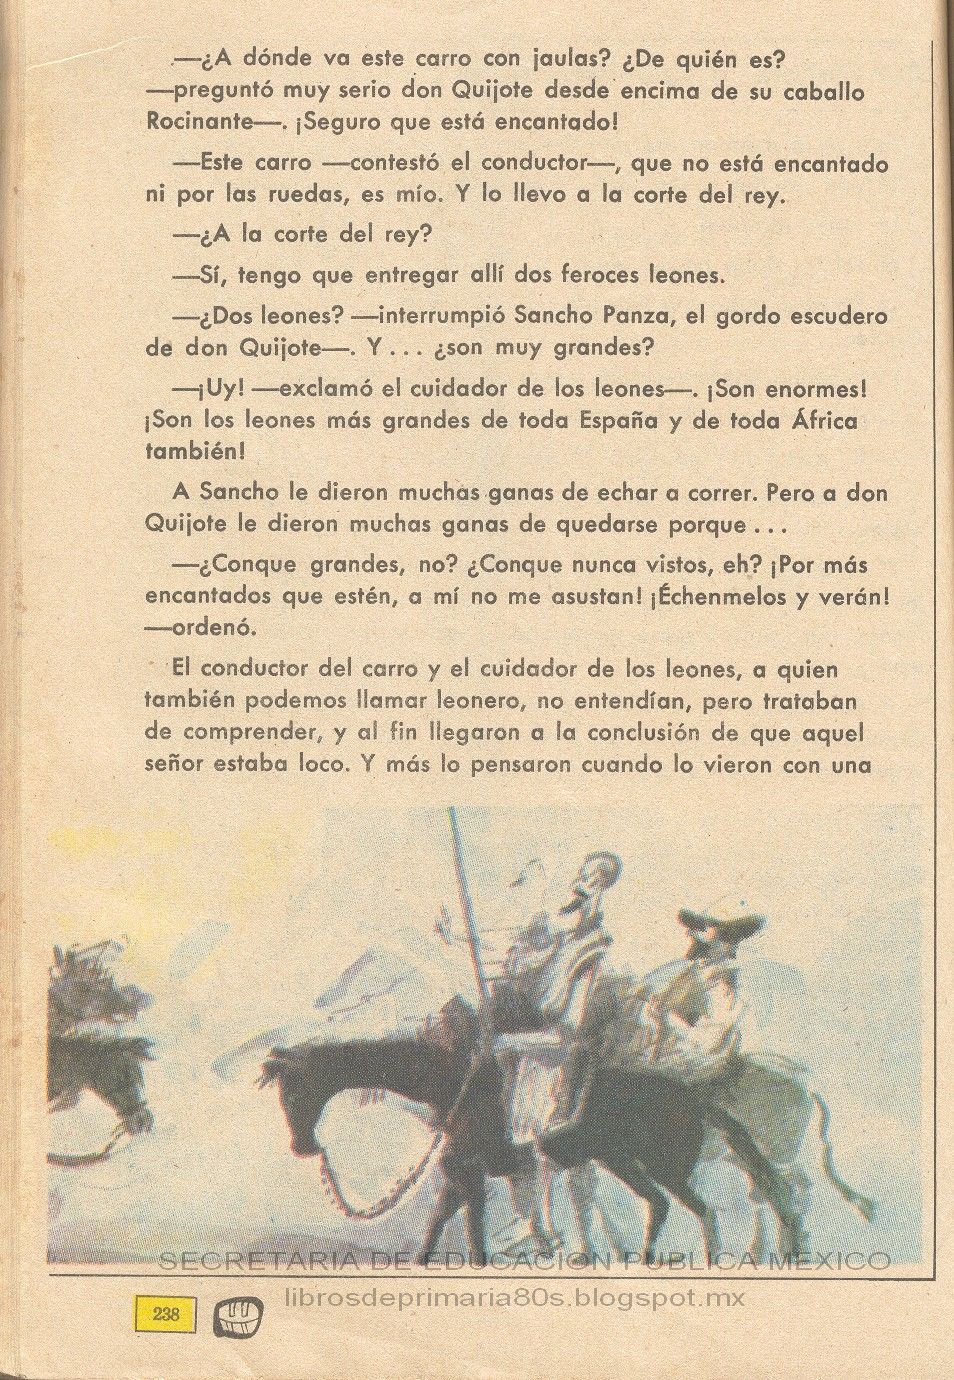 Libros de Primaria de los 80's: Don Quijote, el Caballero de los Leones -  Español 4to grado